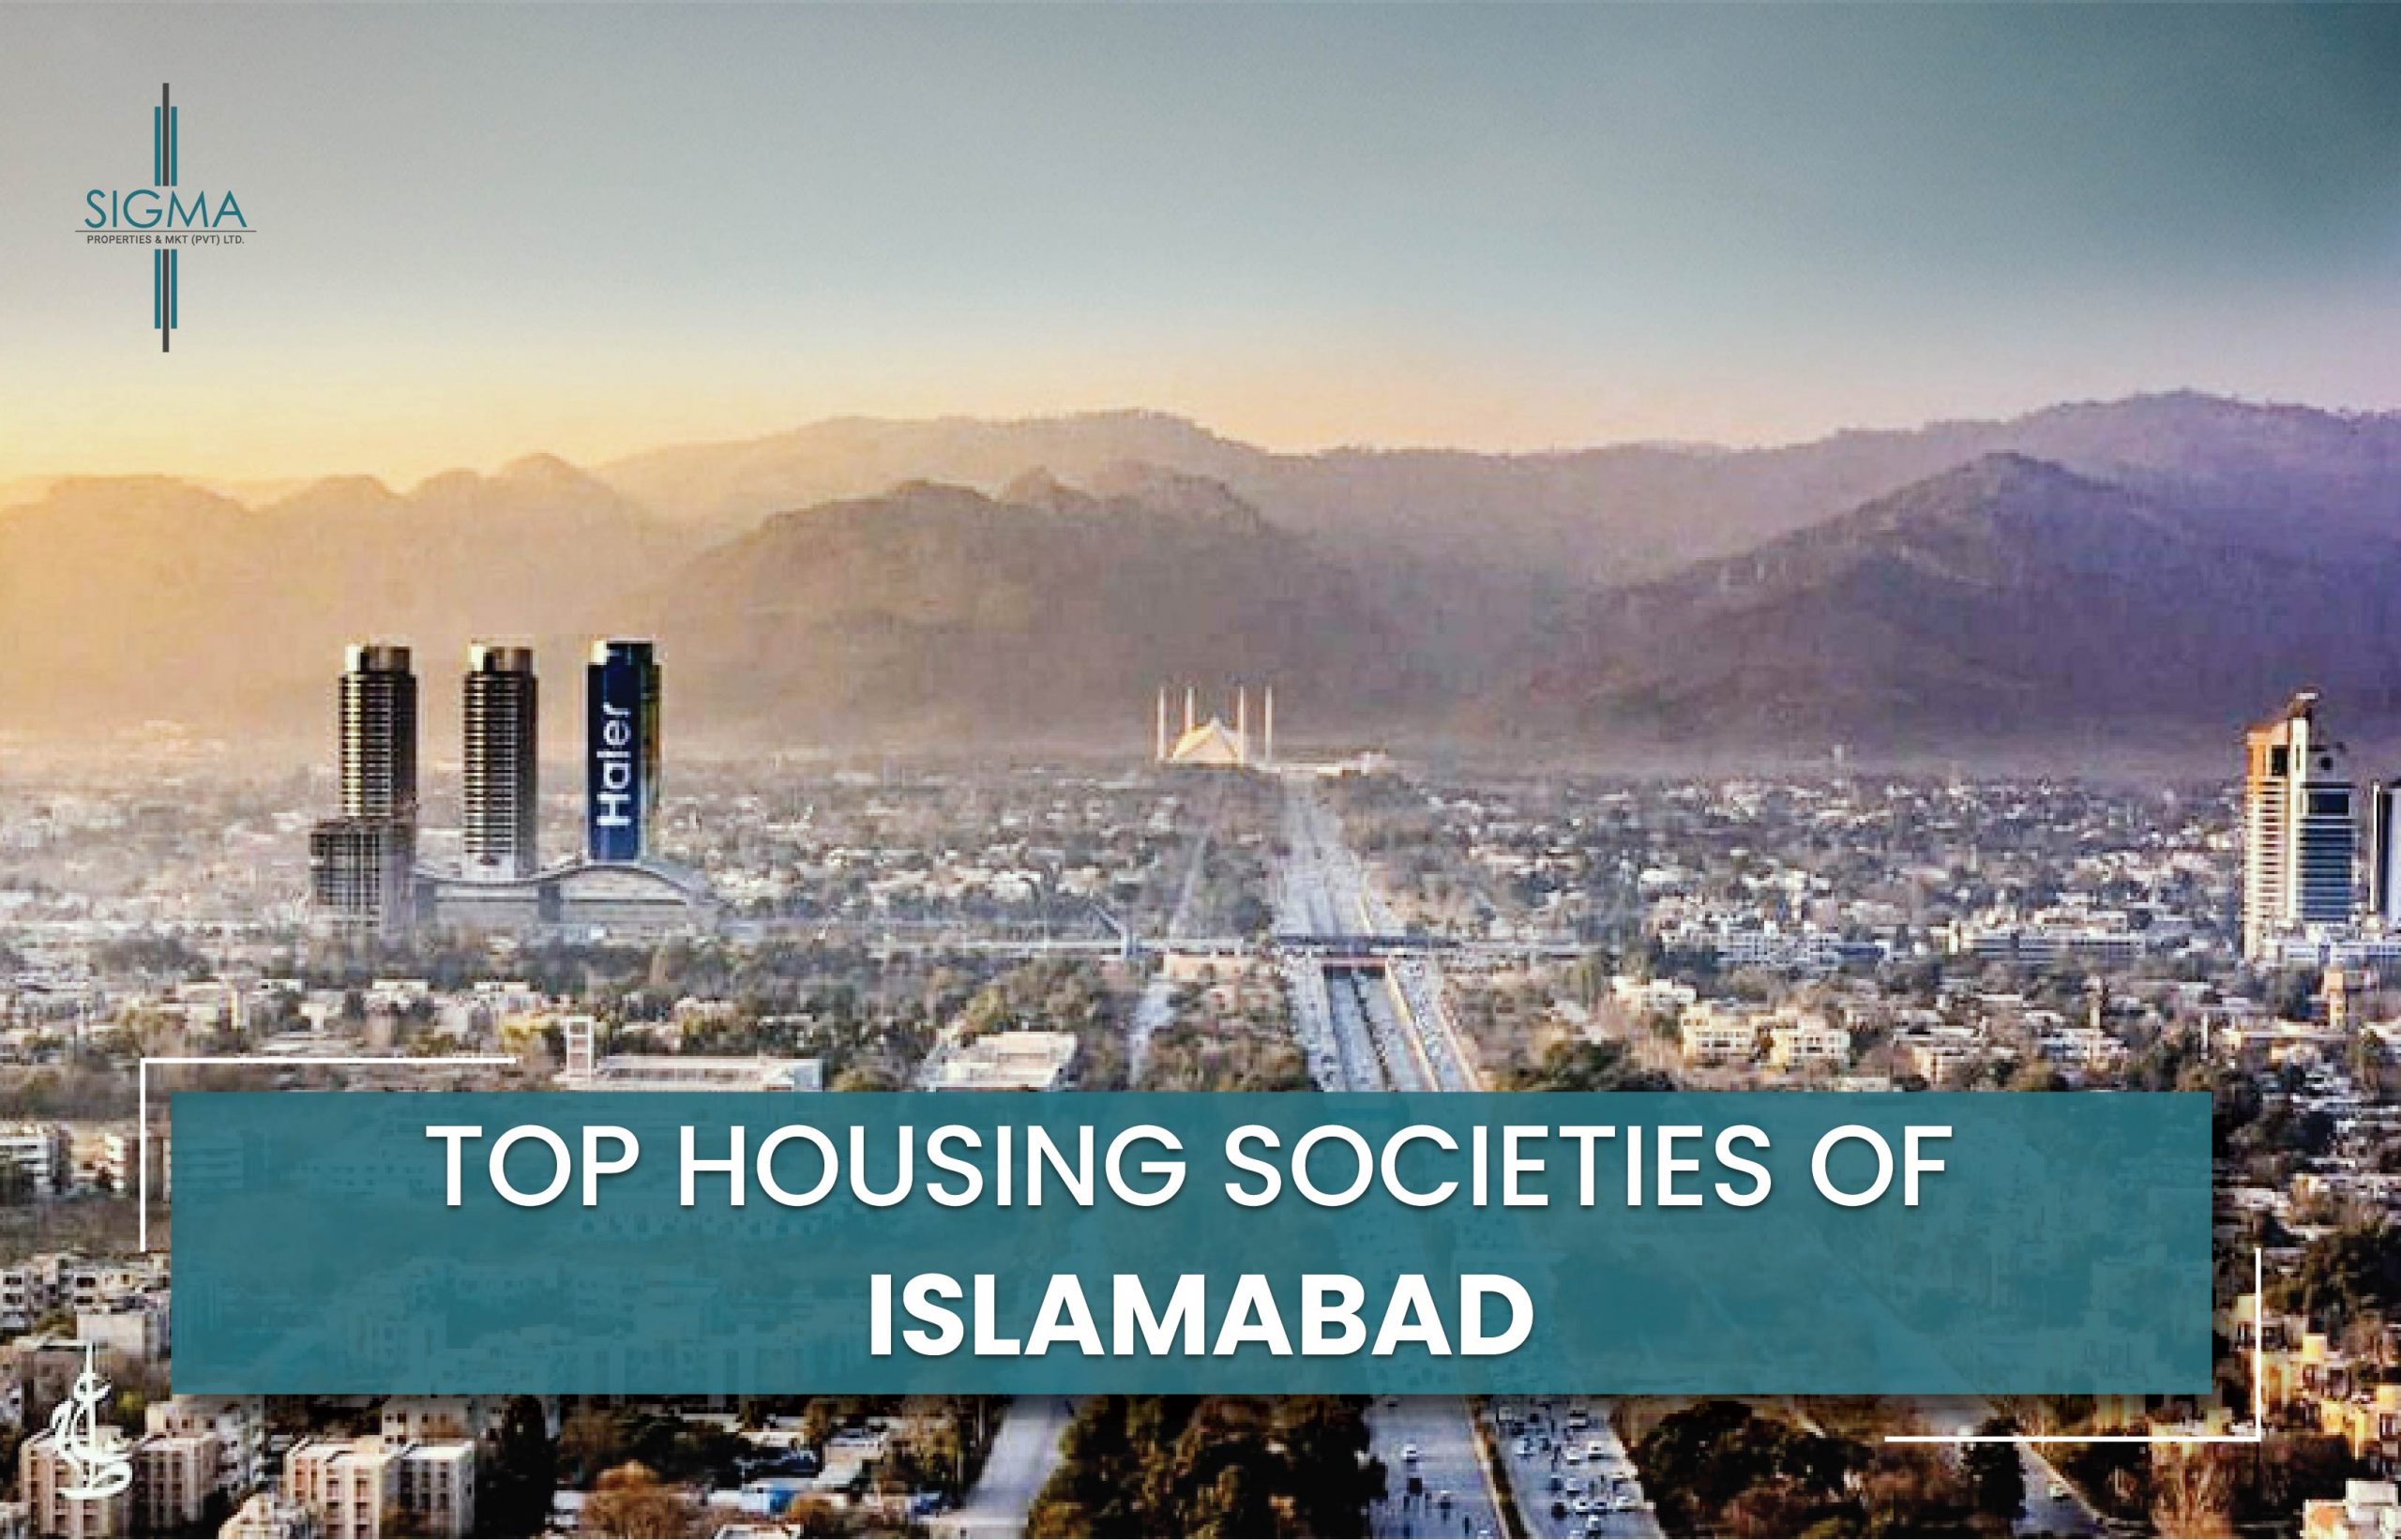 Top Housing Societies of Islamabad